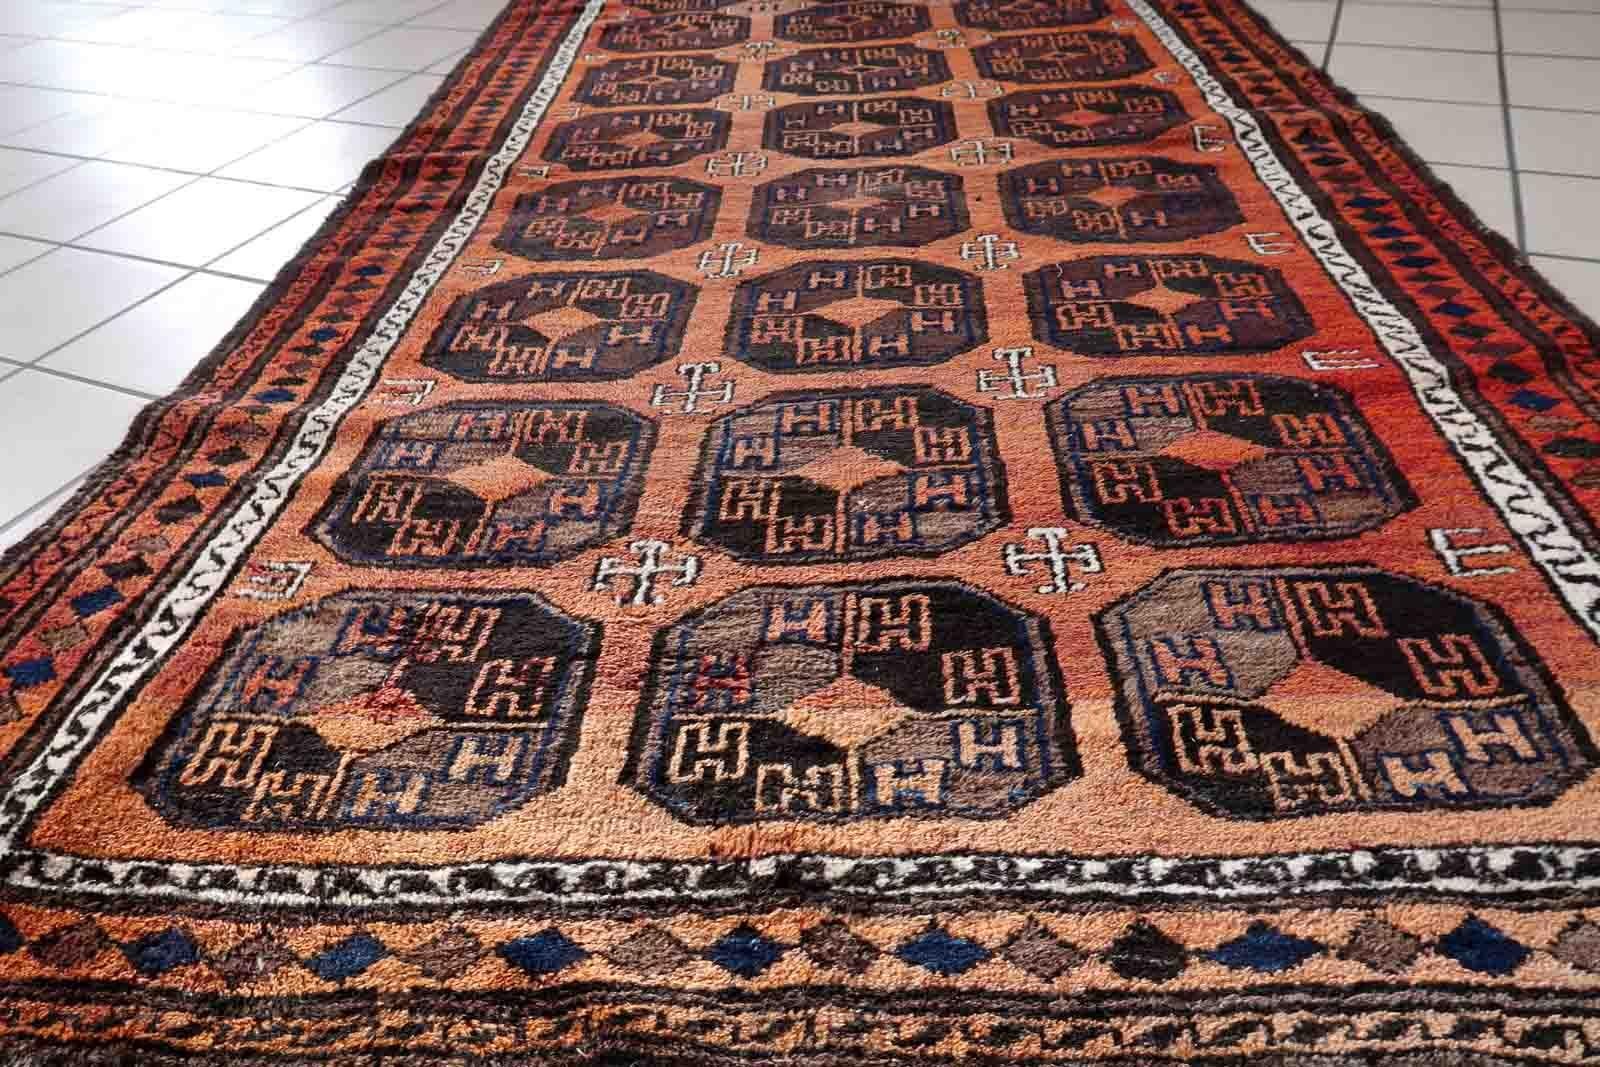 Handgefertigter antiker afghanischer Belutsch-Teppich mit wiederkehrendem Muster. Der Teppich ist aus dem Anfang des 20. Jahrhunderts im Originalzustand, er hat etwas niedrigen Flor.

-Zustand: original, etwas niedriger Flor,

-CIRCA: 1900er